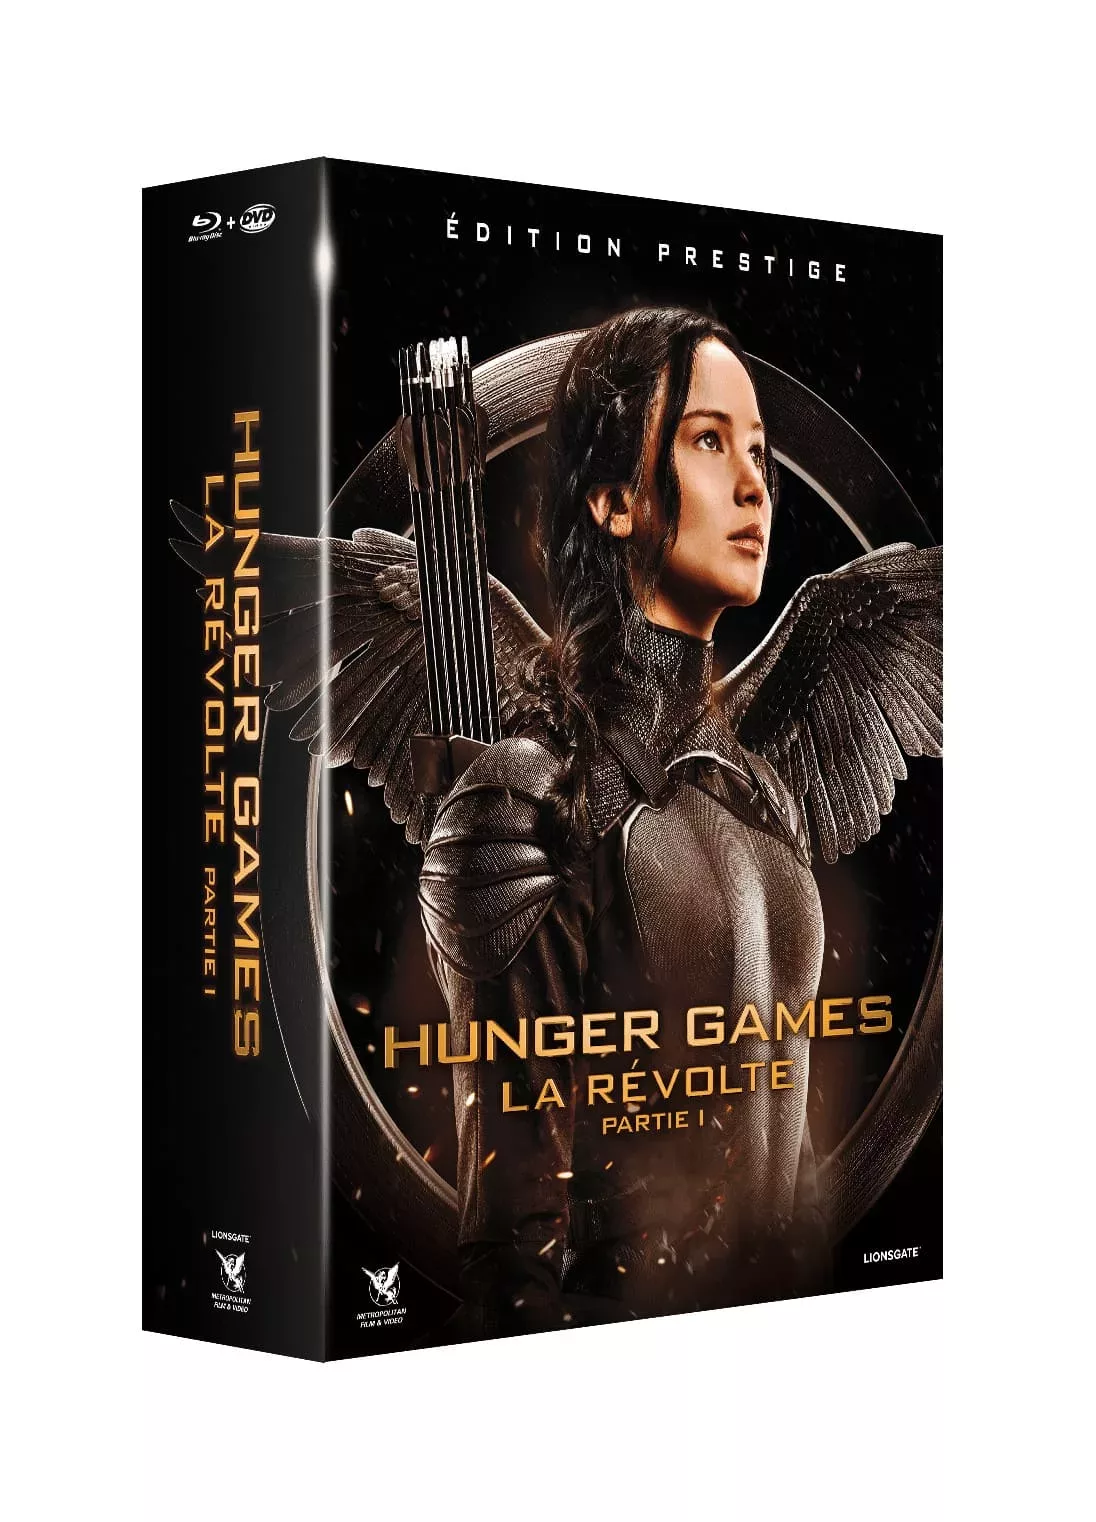 Miss Bobby_Hunger Games-La révolte-Partie 1-édition prestige